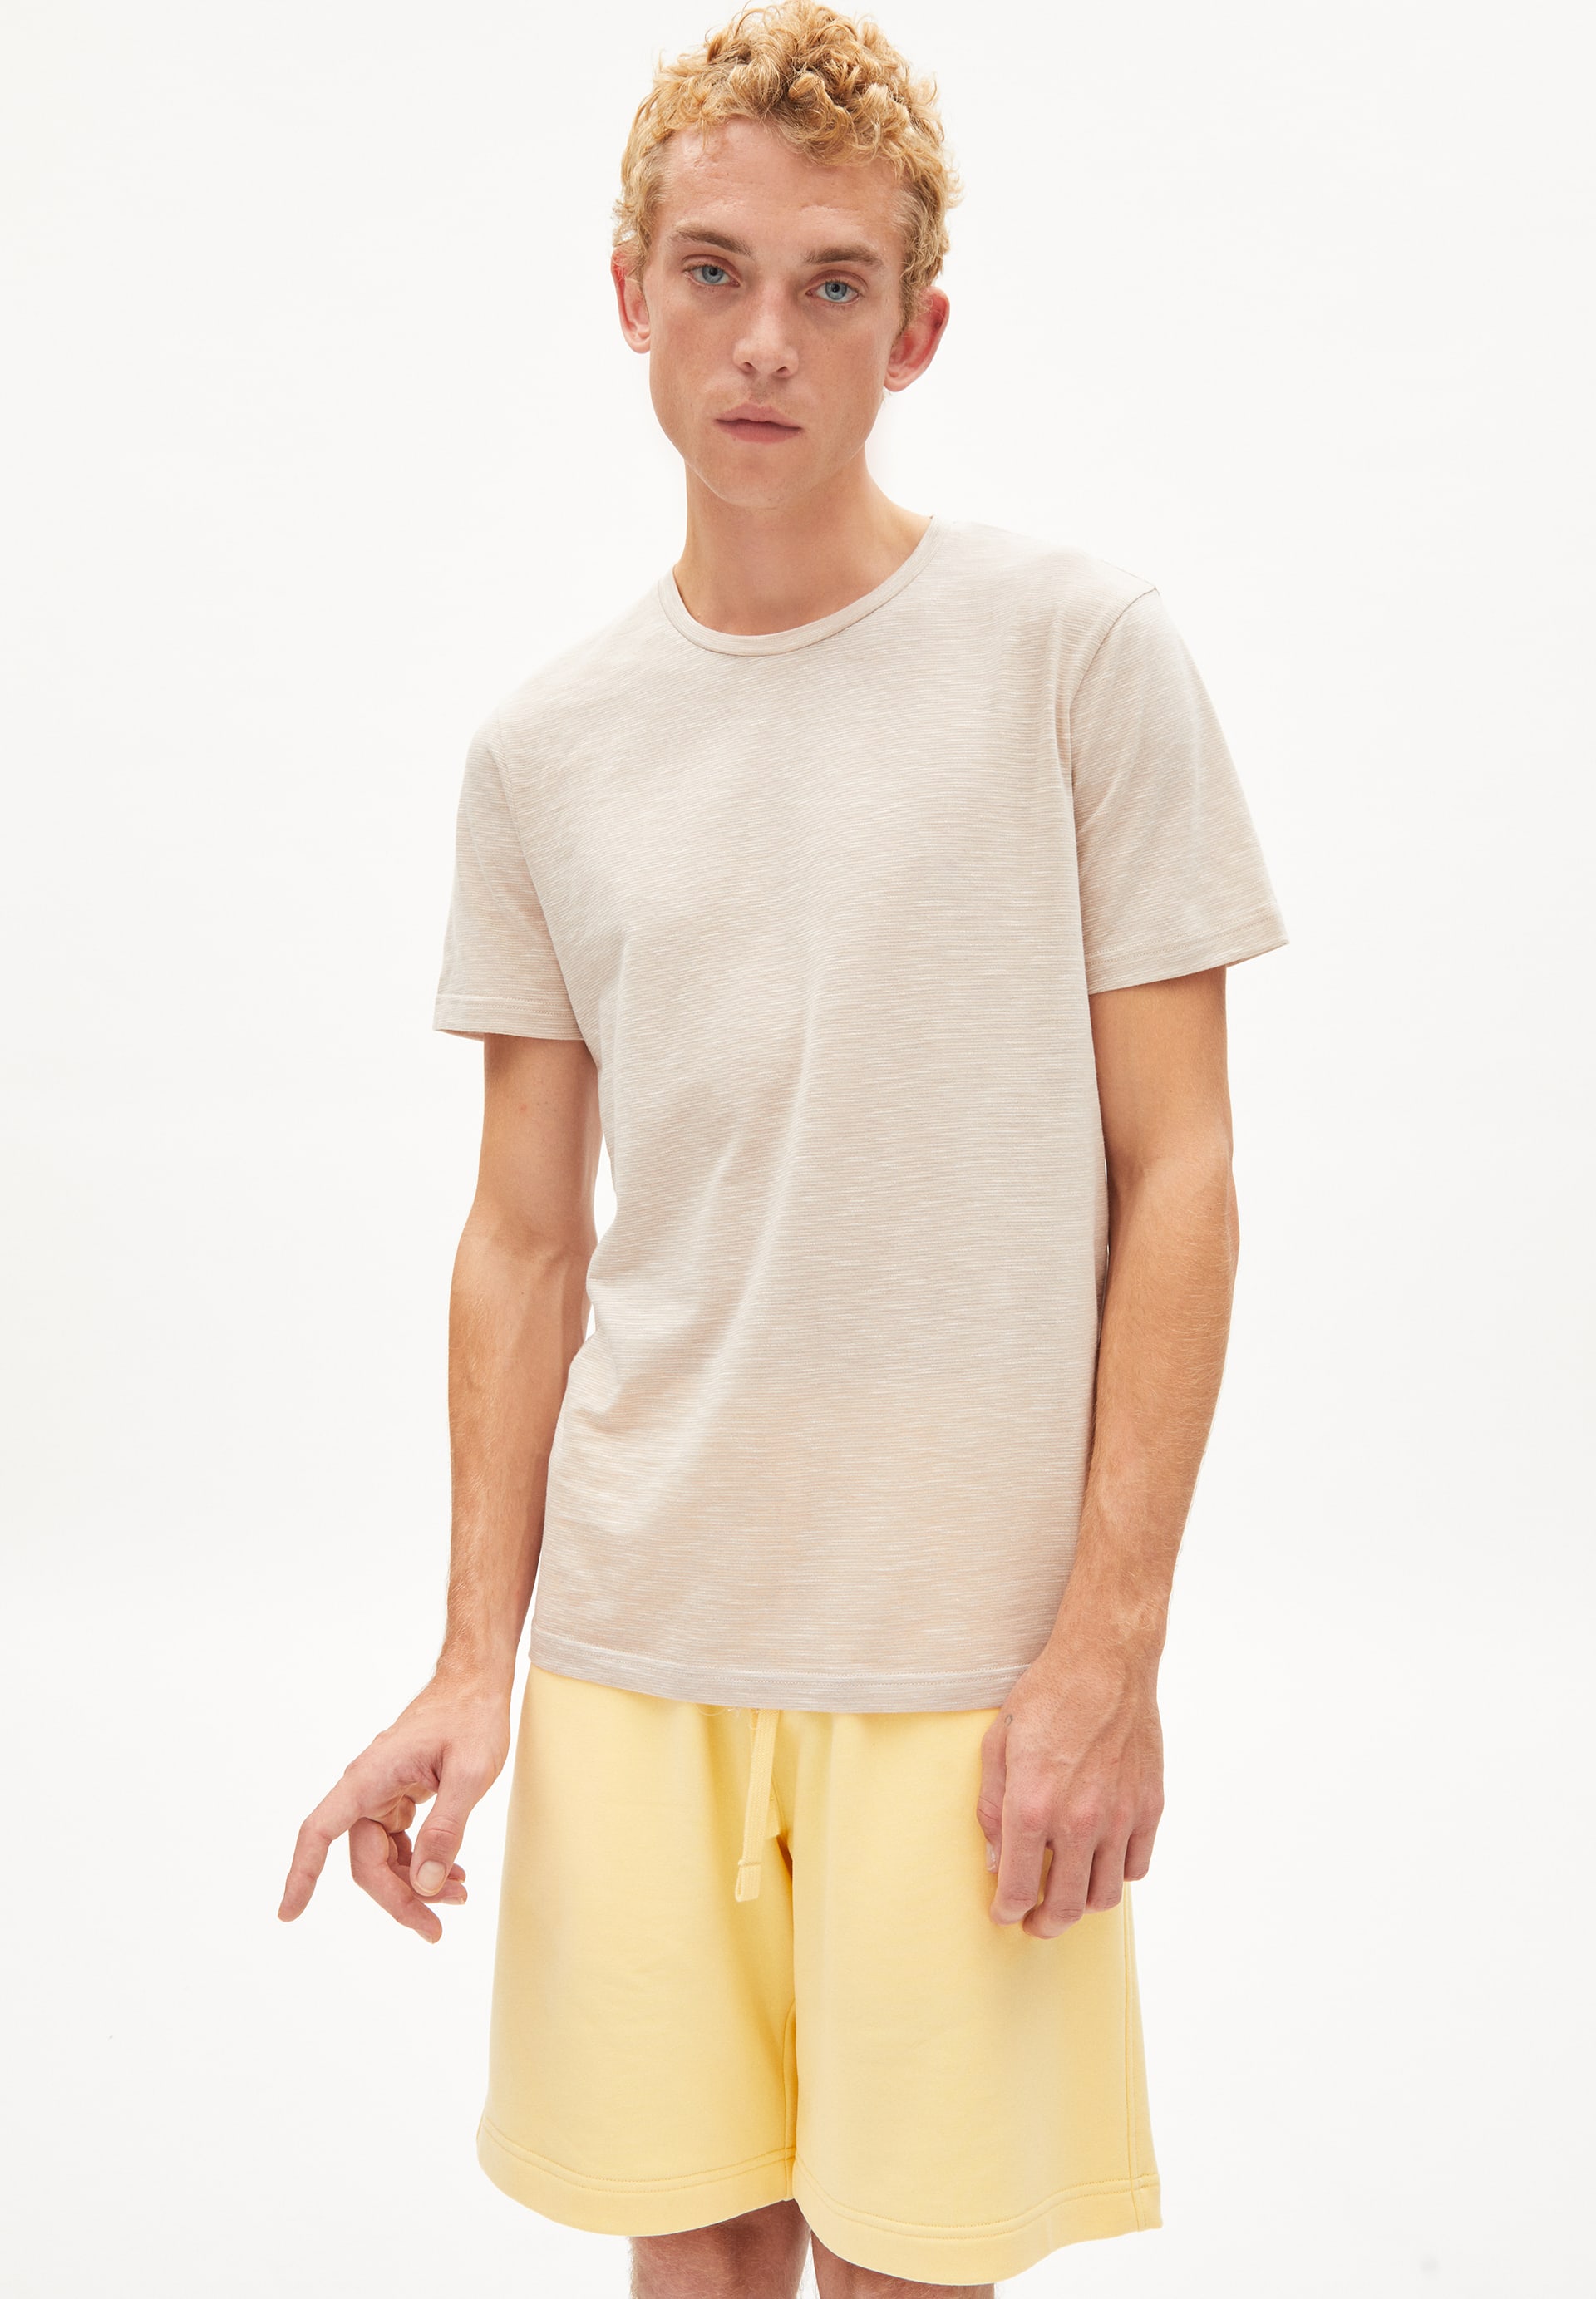 T-Shirt JAAMES STRUCTURE in light desert-off white von ARMEDANGELS günstig online kaufen